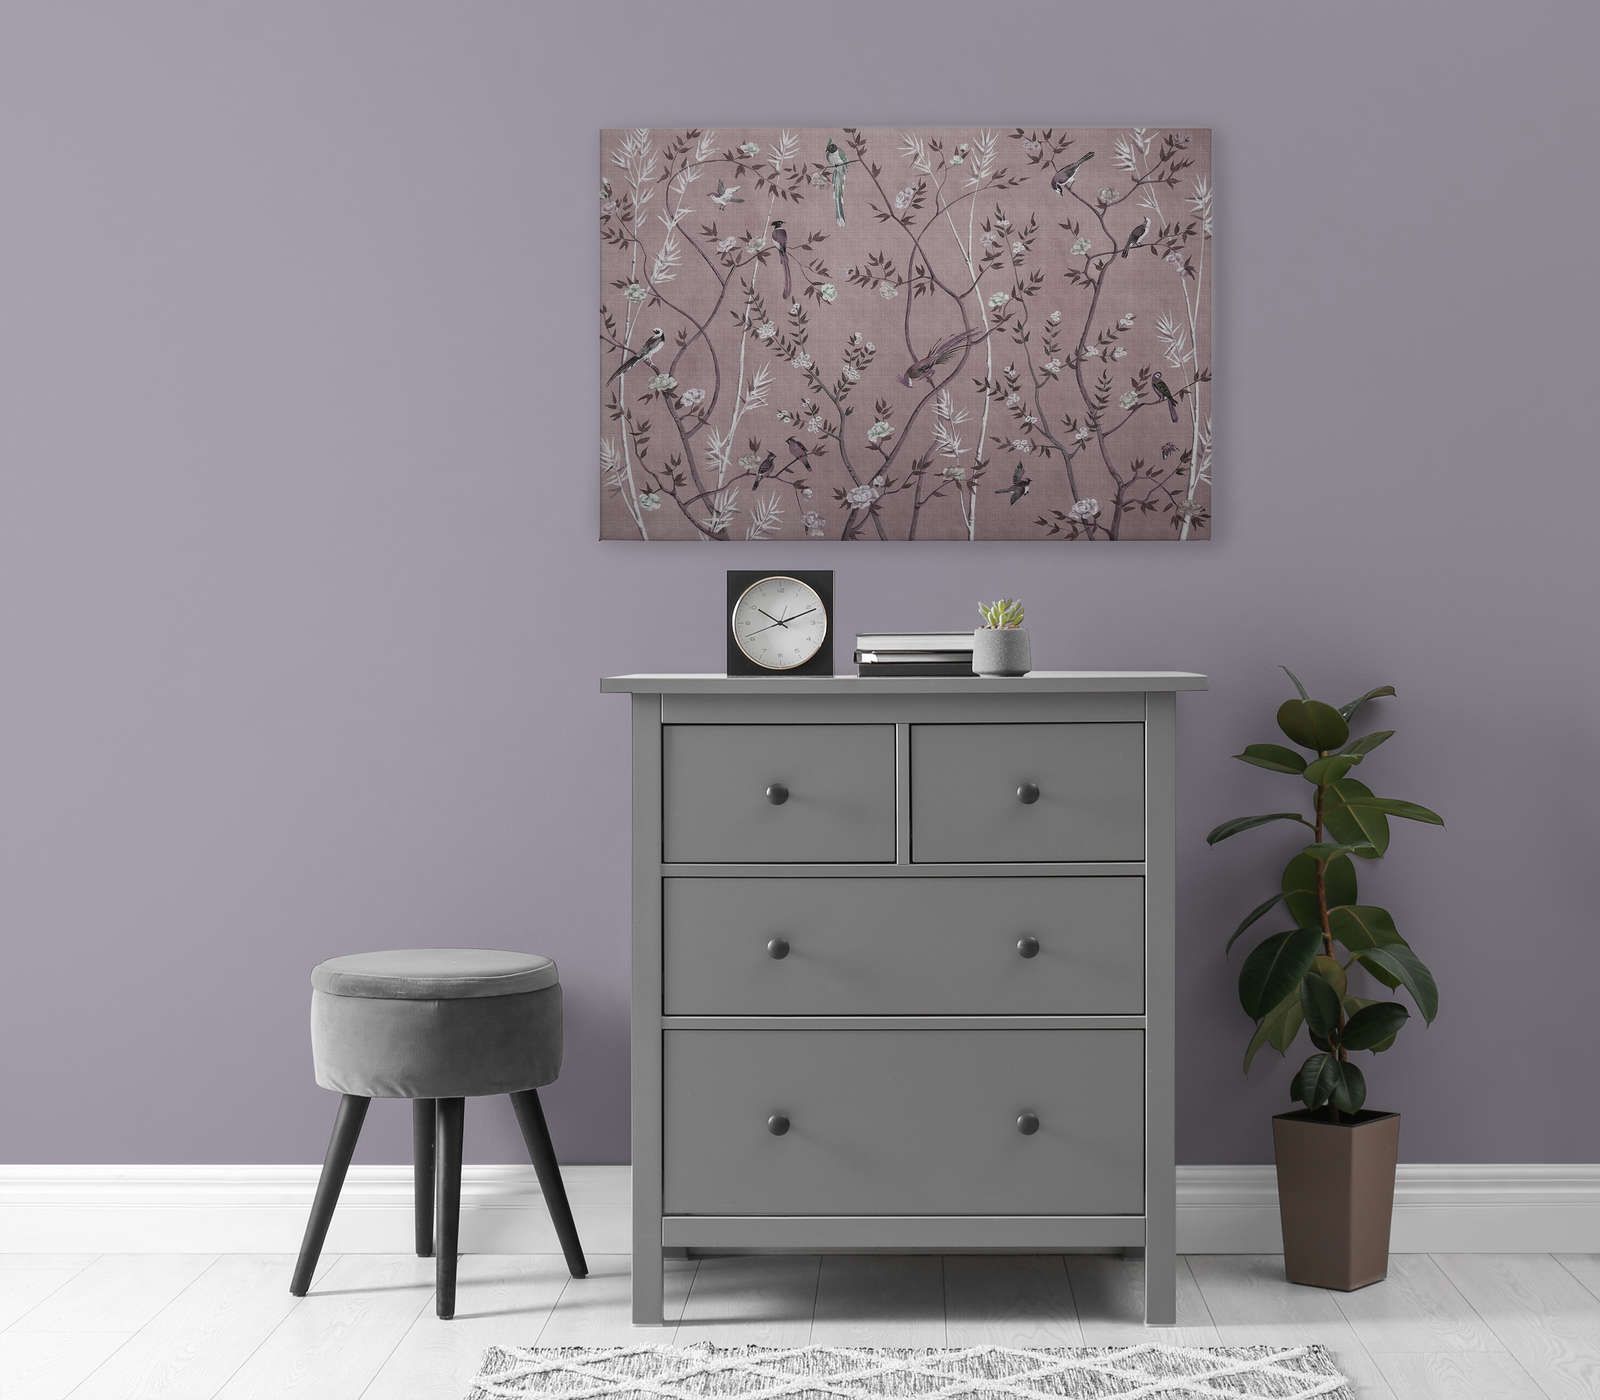             Tea Room 3 - Quadro su tela Birds & Blossoms Design in rosa e bianco - 0,90 m x 0,60 m
        